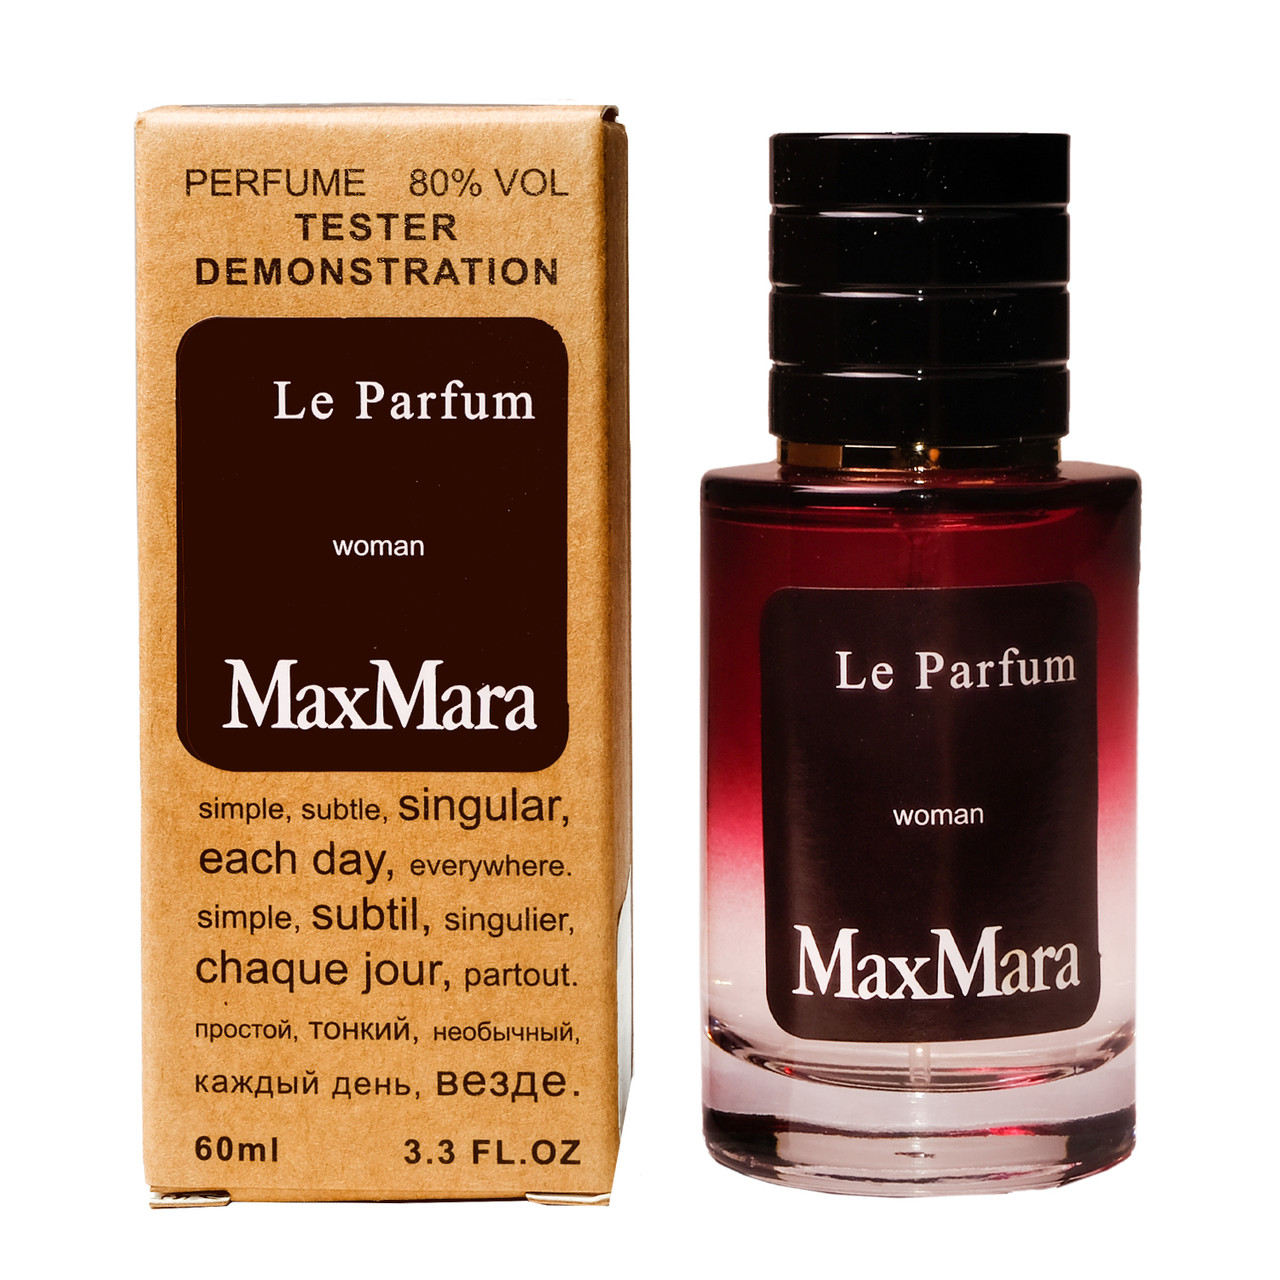 Max Mara Le Parfum TESTER LUX, 60 мл